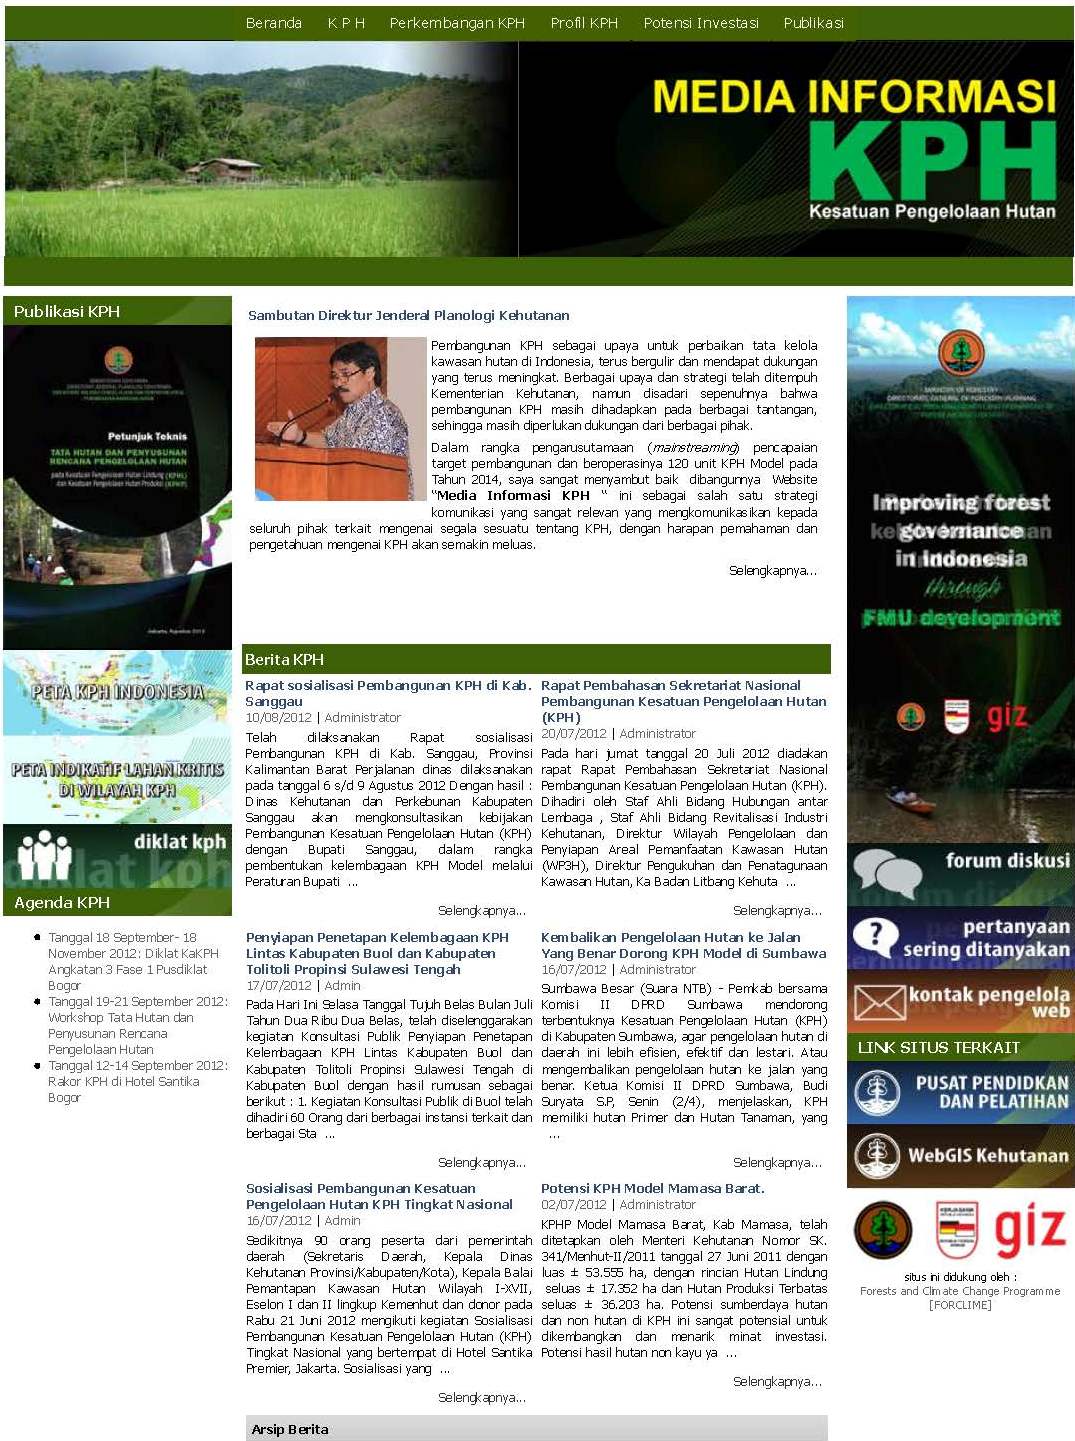 Launcing_KPH_website